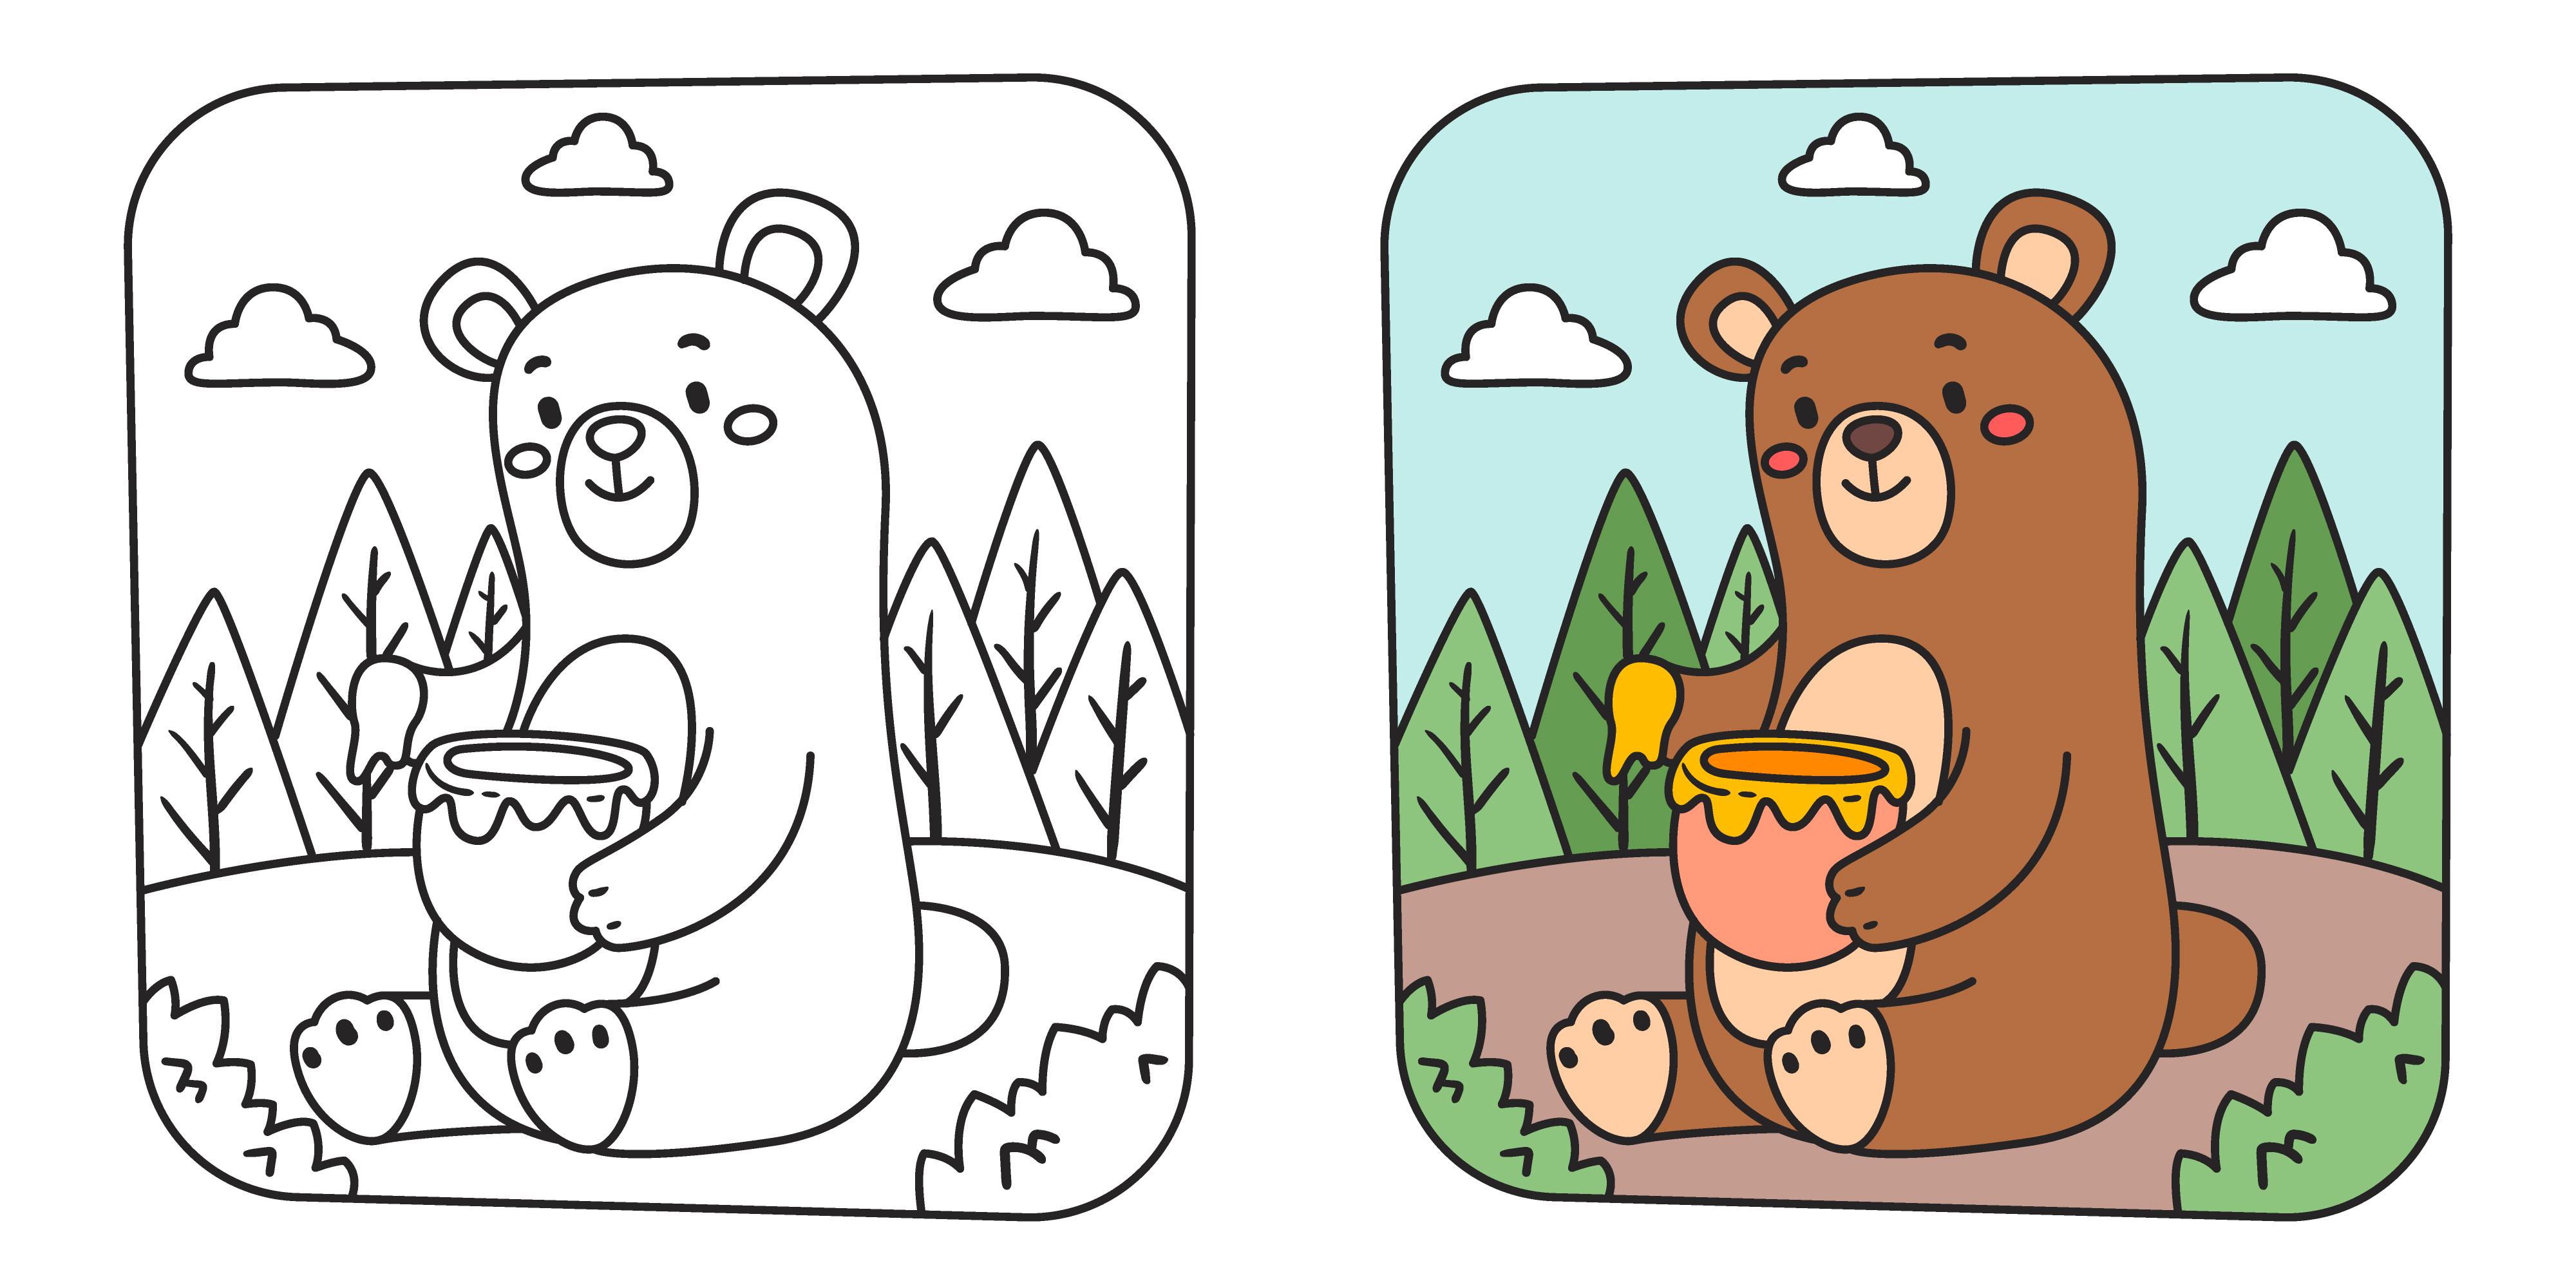 Ours à colorier